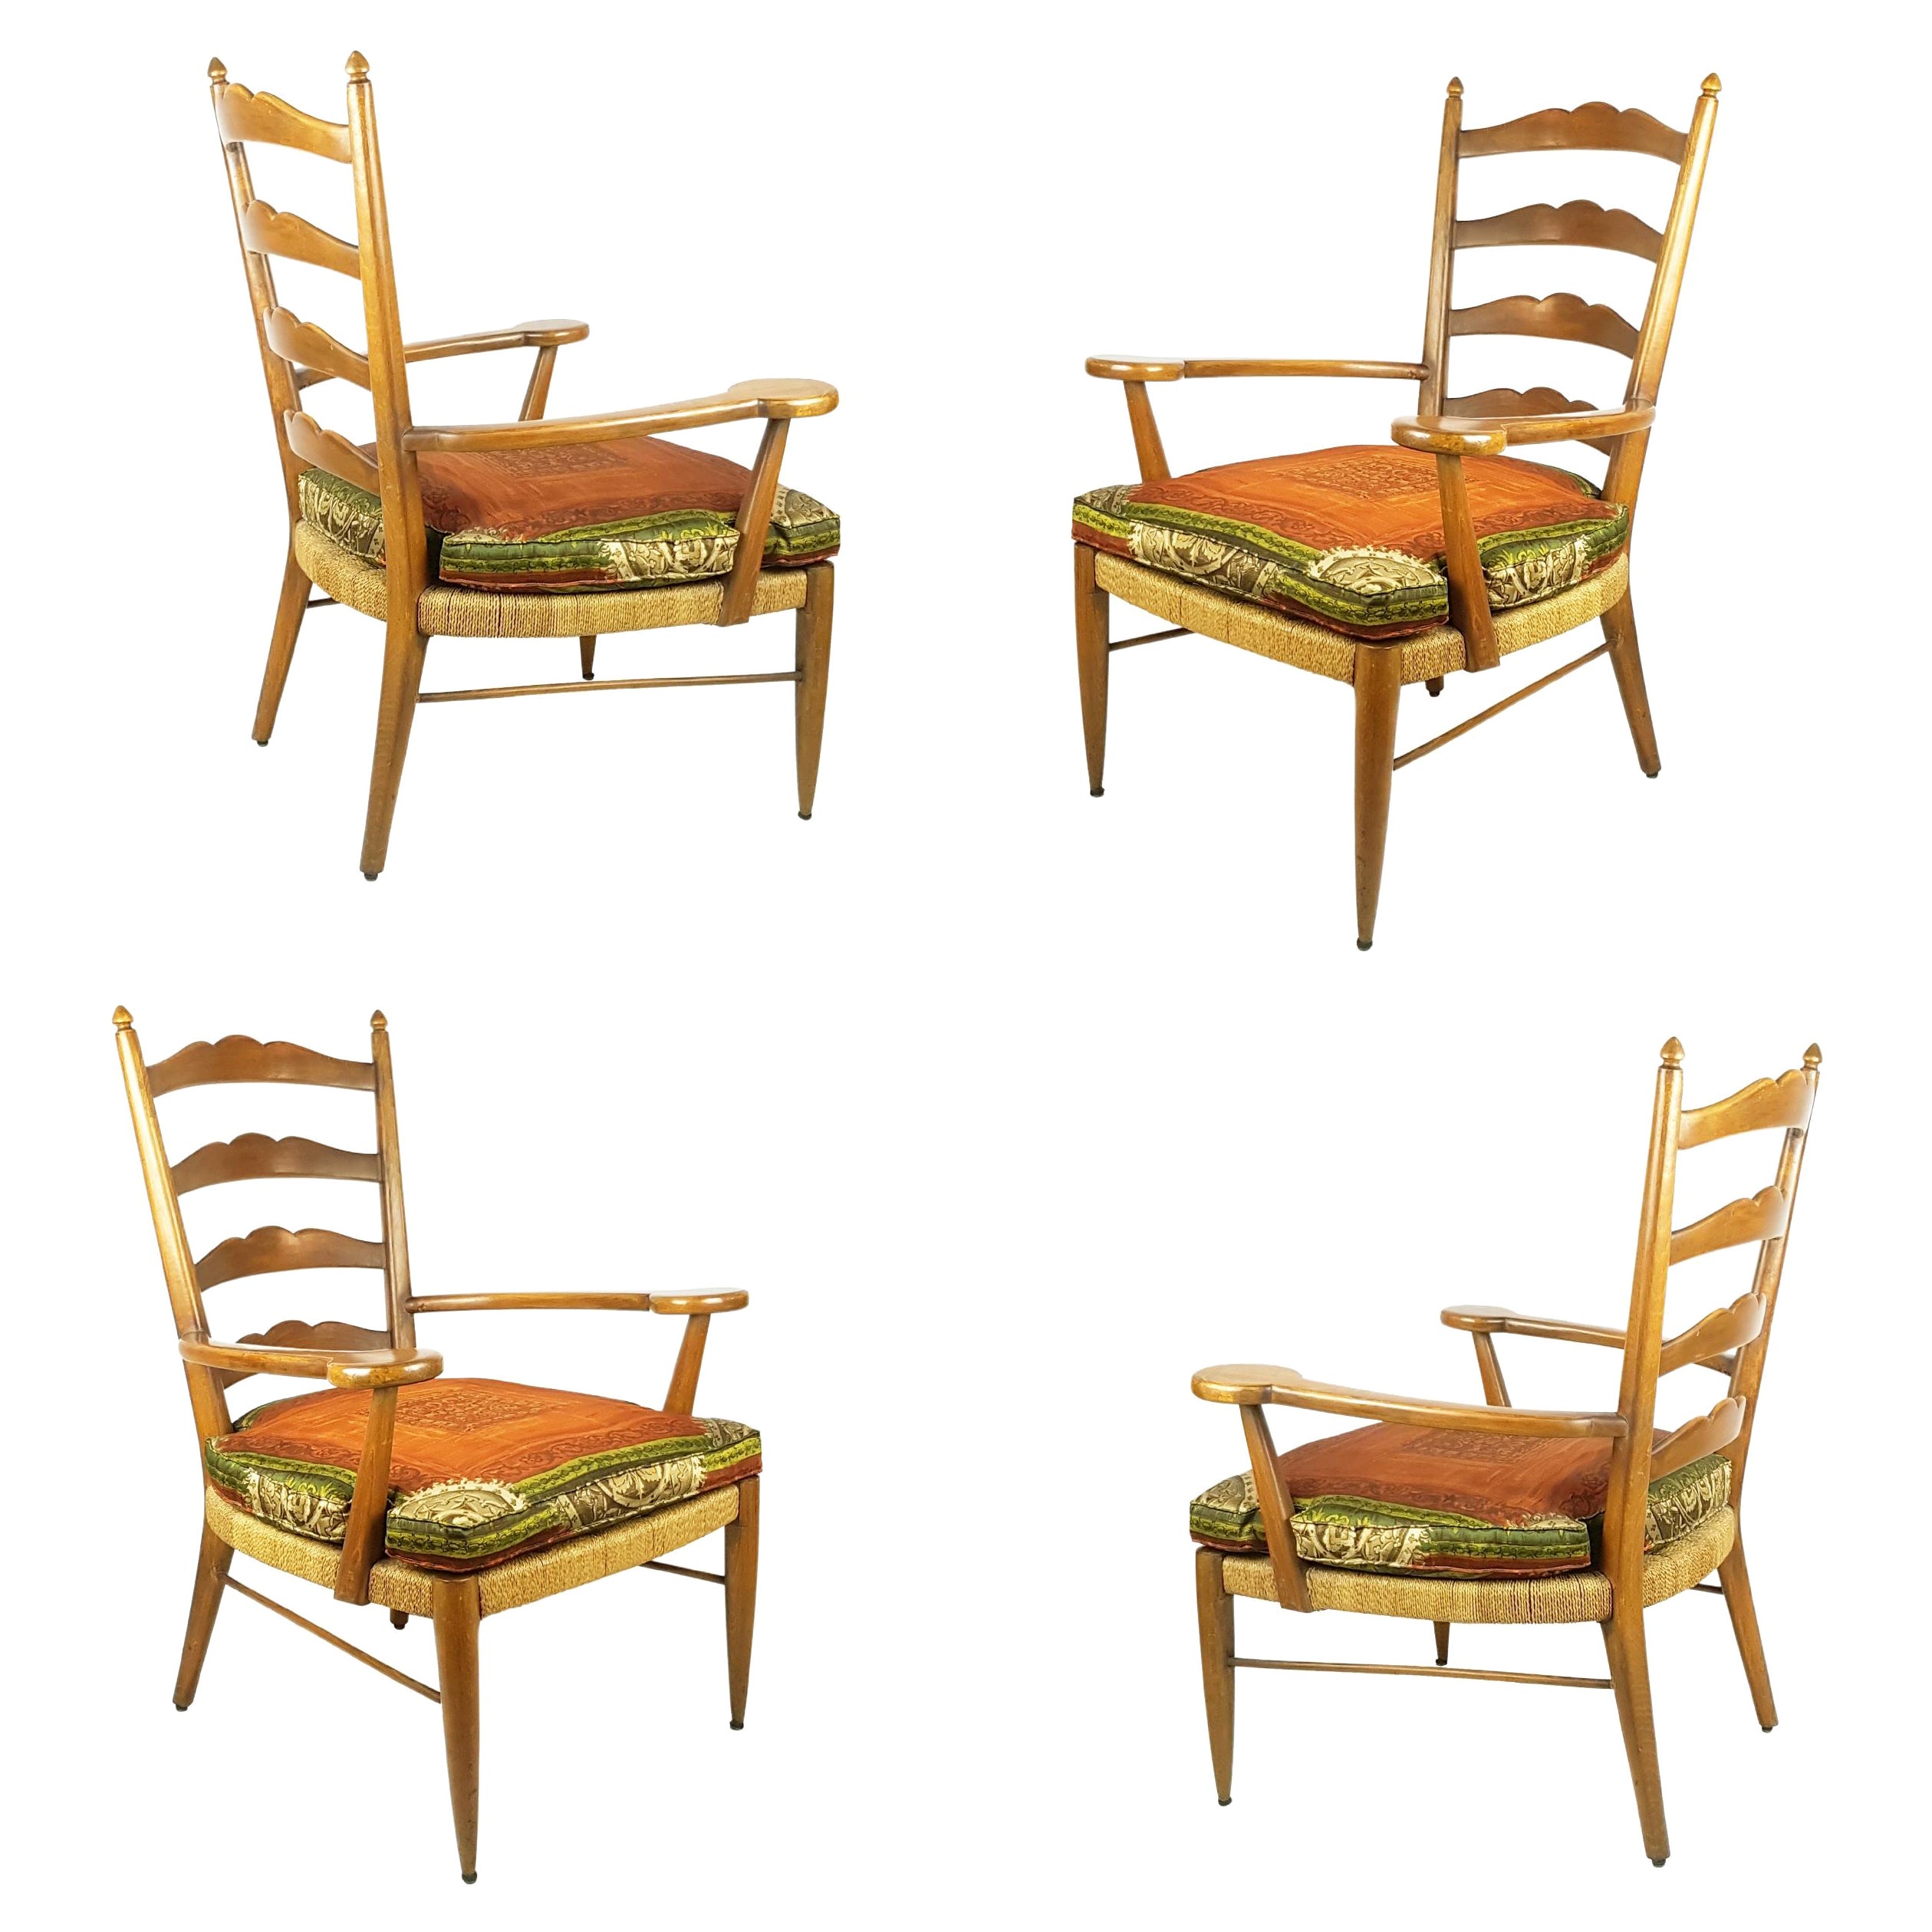 Seltenes Paar Sessel aus Holz und Seil von Ico Parisi aus dem Jahr 1949